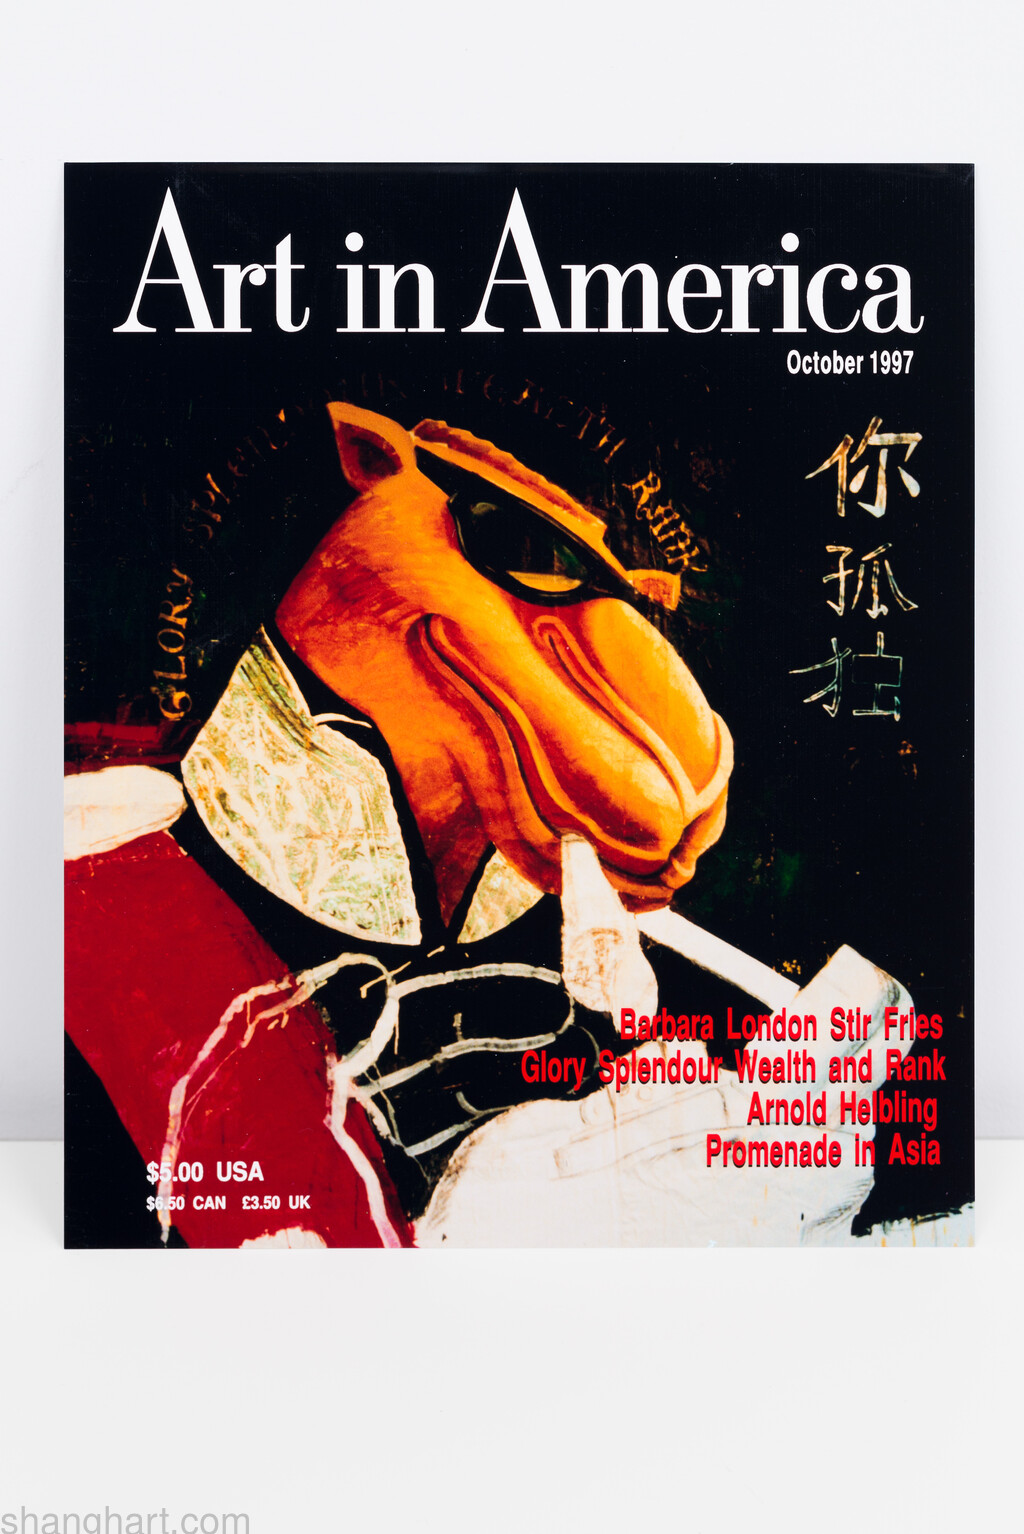 Art in America, 27.6x22.9cm